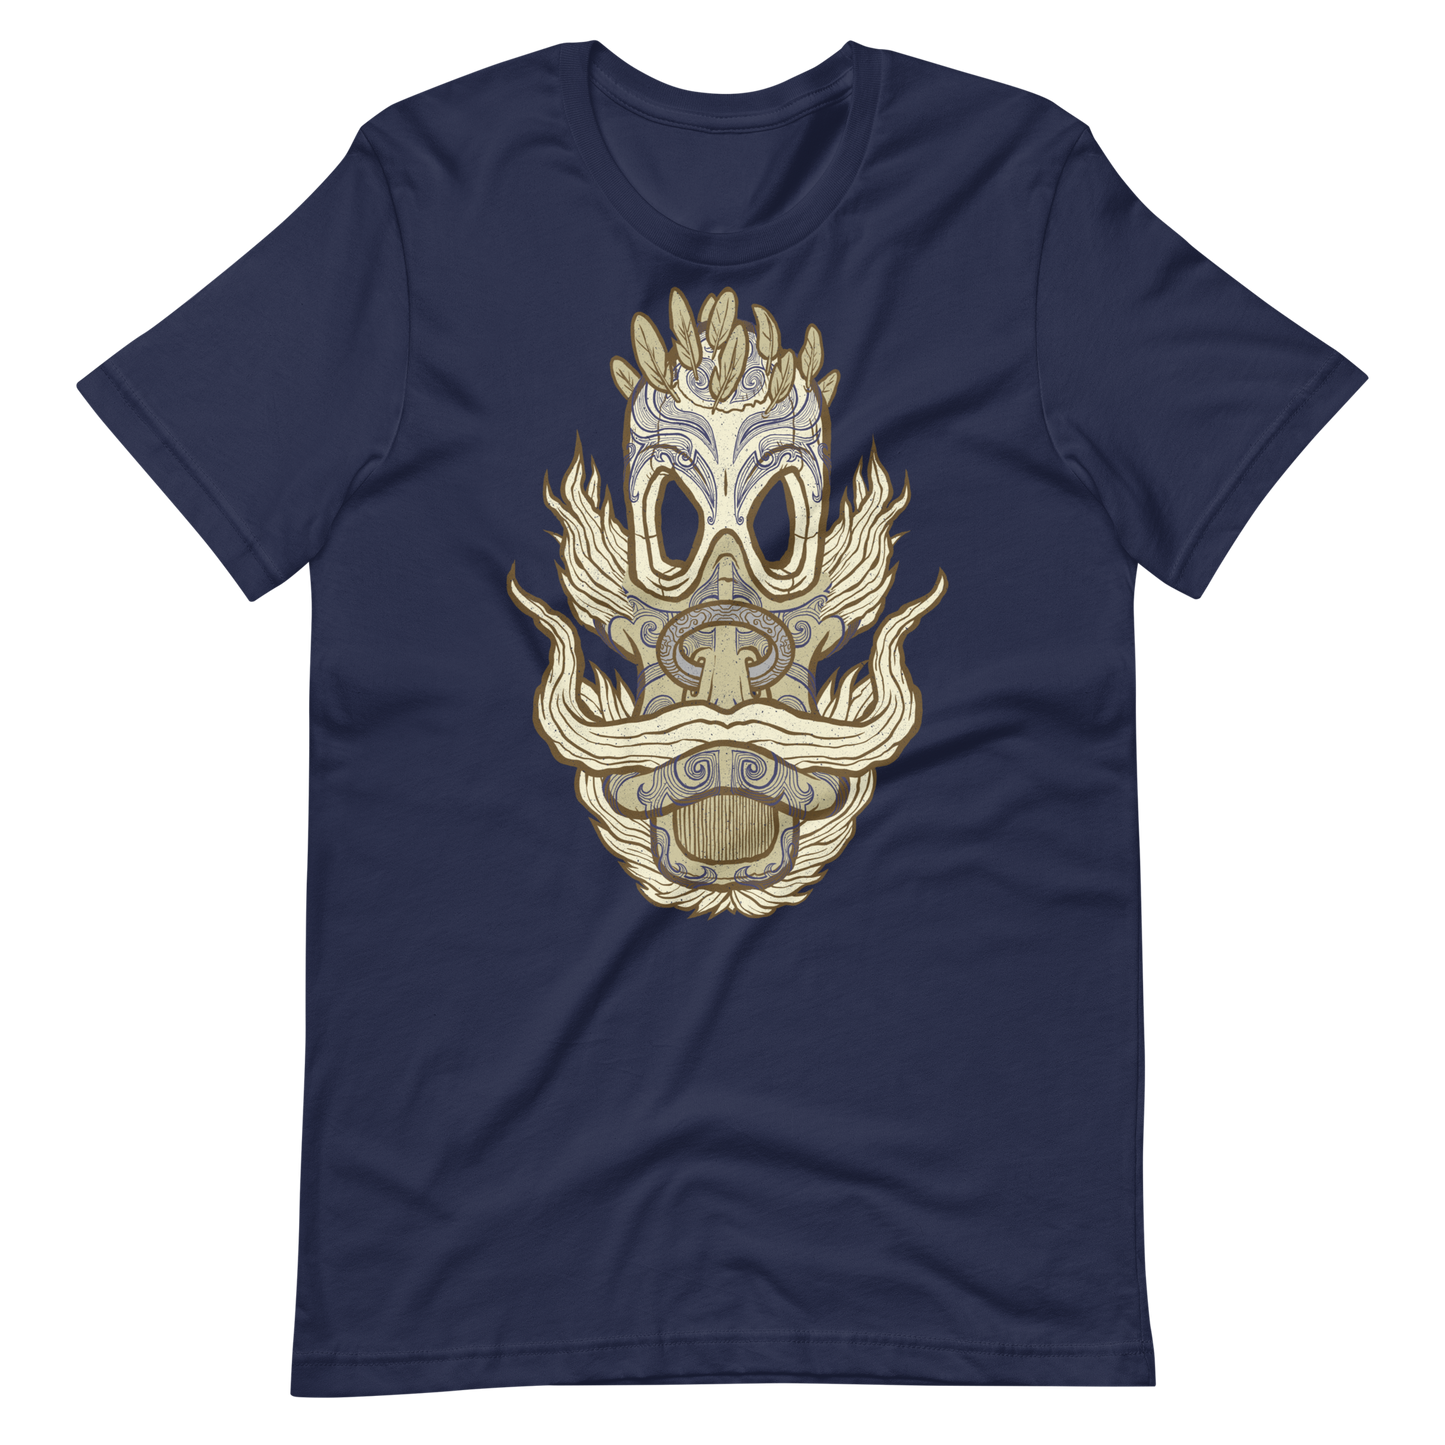 No 006 Wierd Duck Skull collection t-shirt